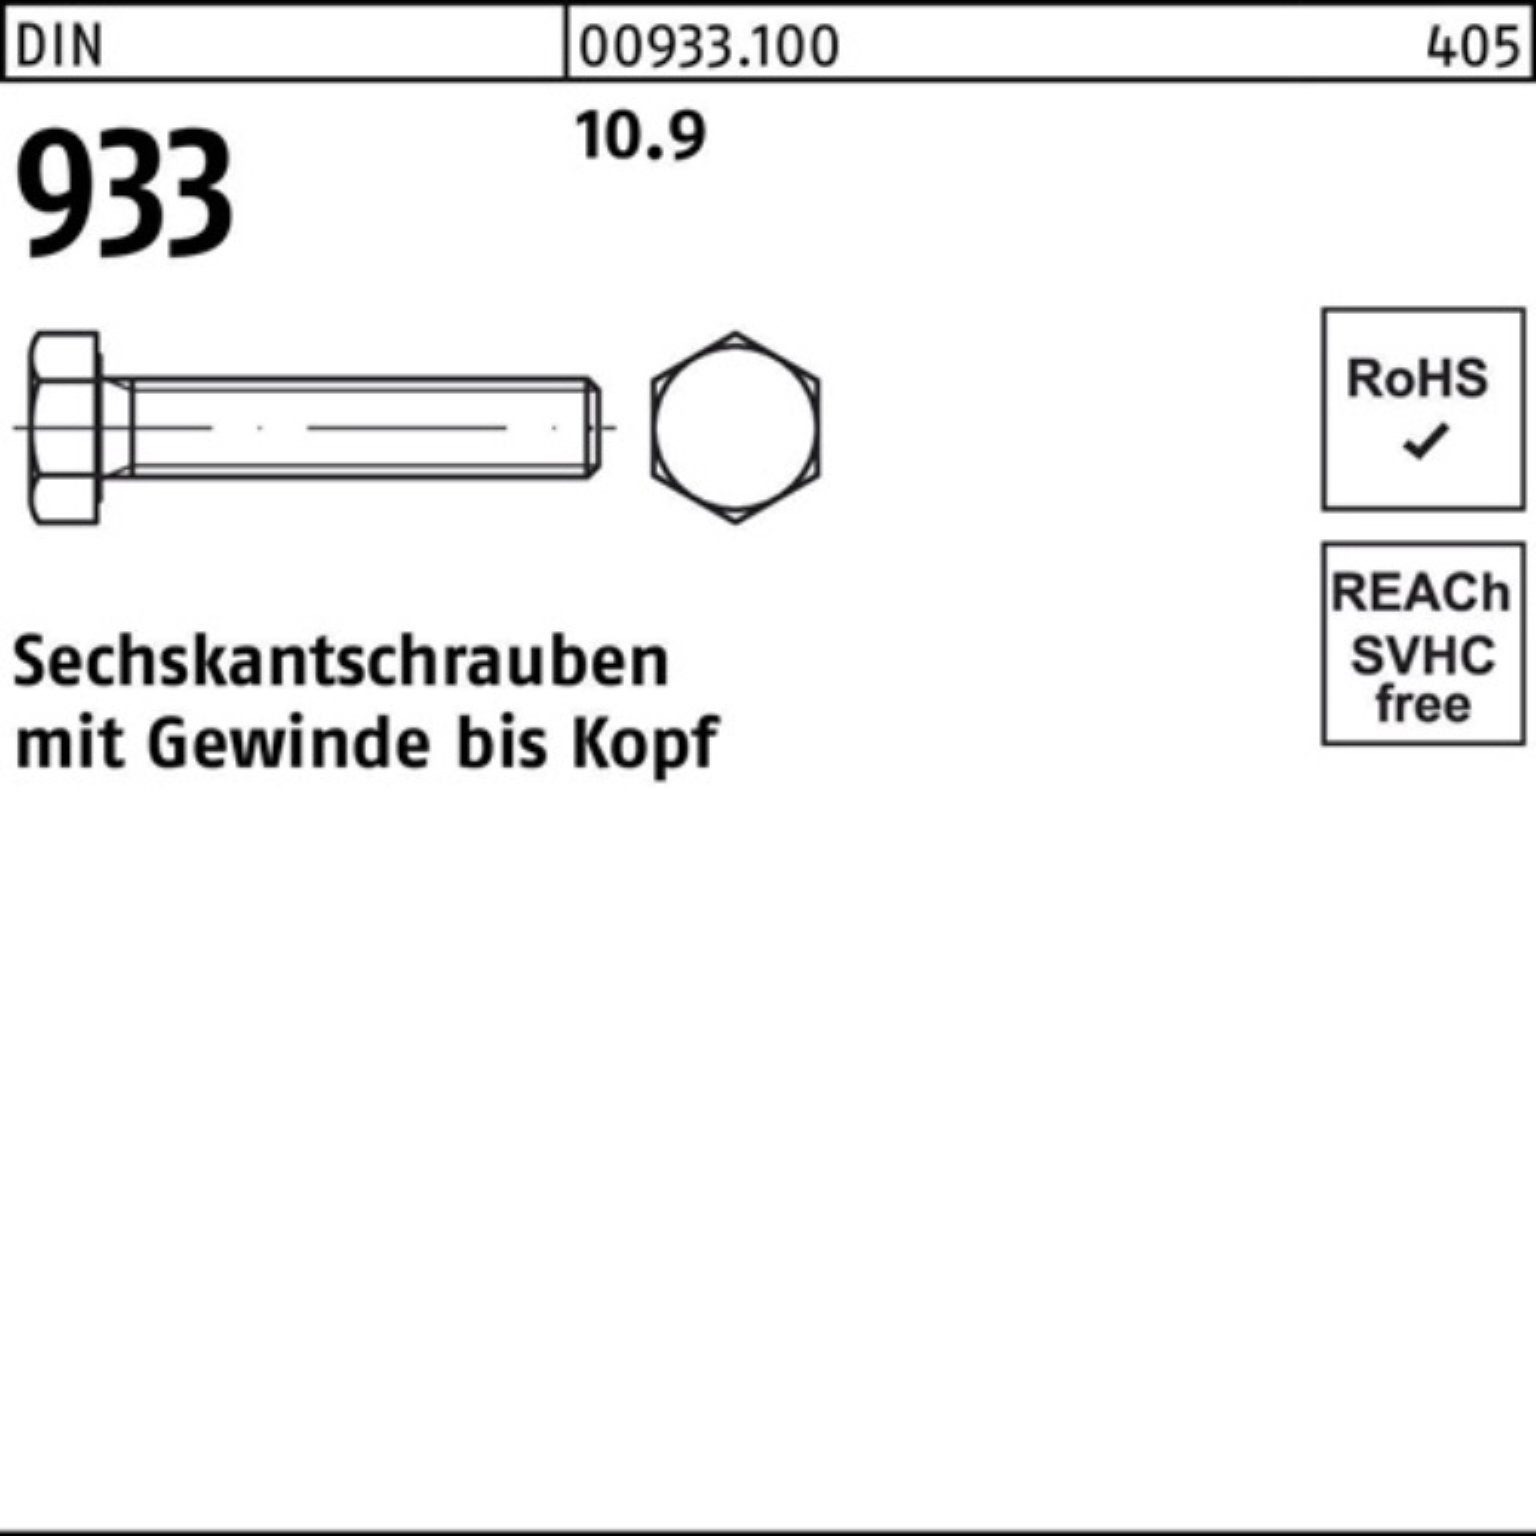 Sechskantschraube 10.9 DIN DIN Sechskantschraube M6x 500er 933 933 22 VG Reyher 500 Pack Stück